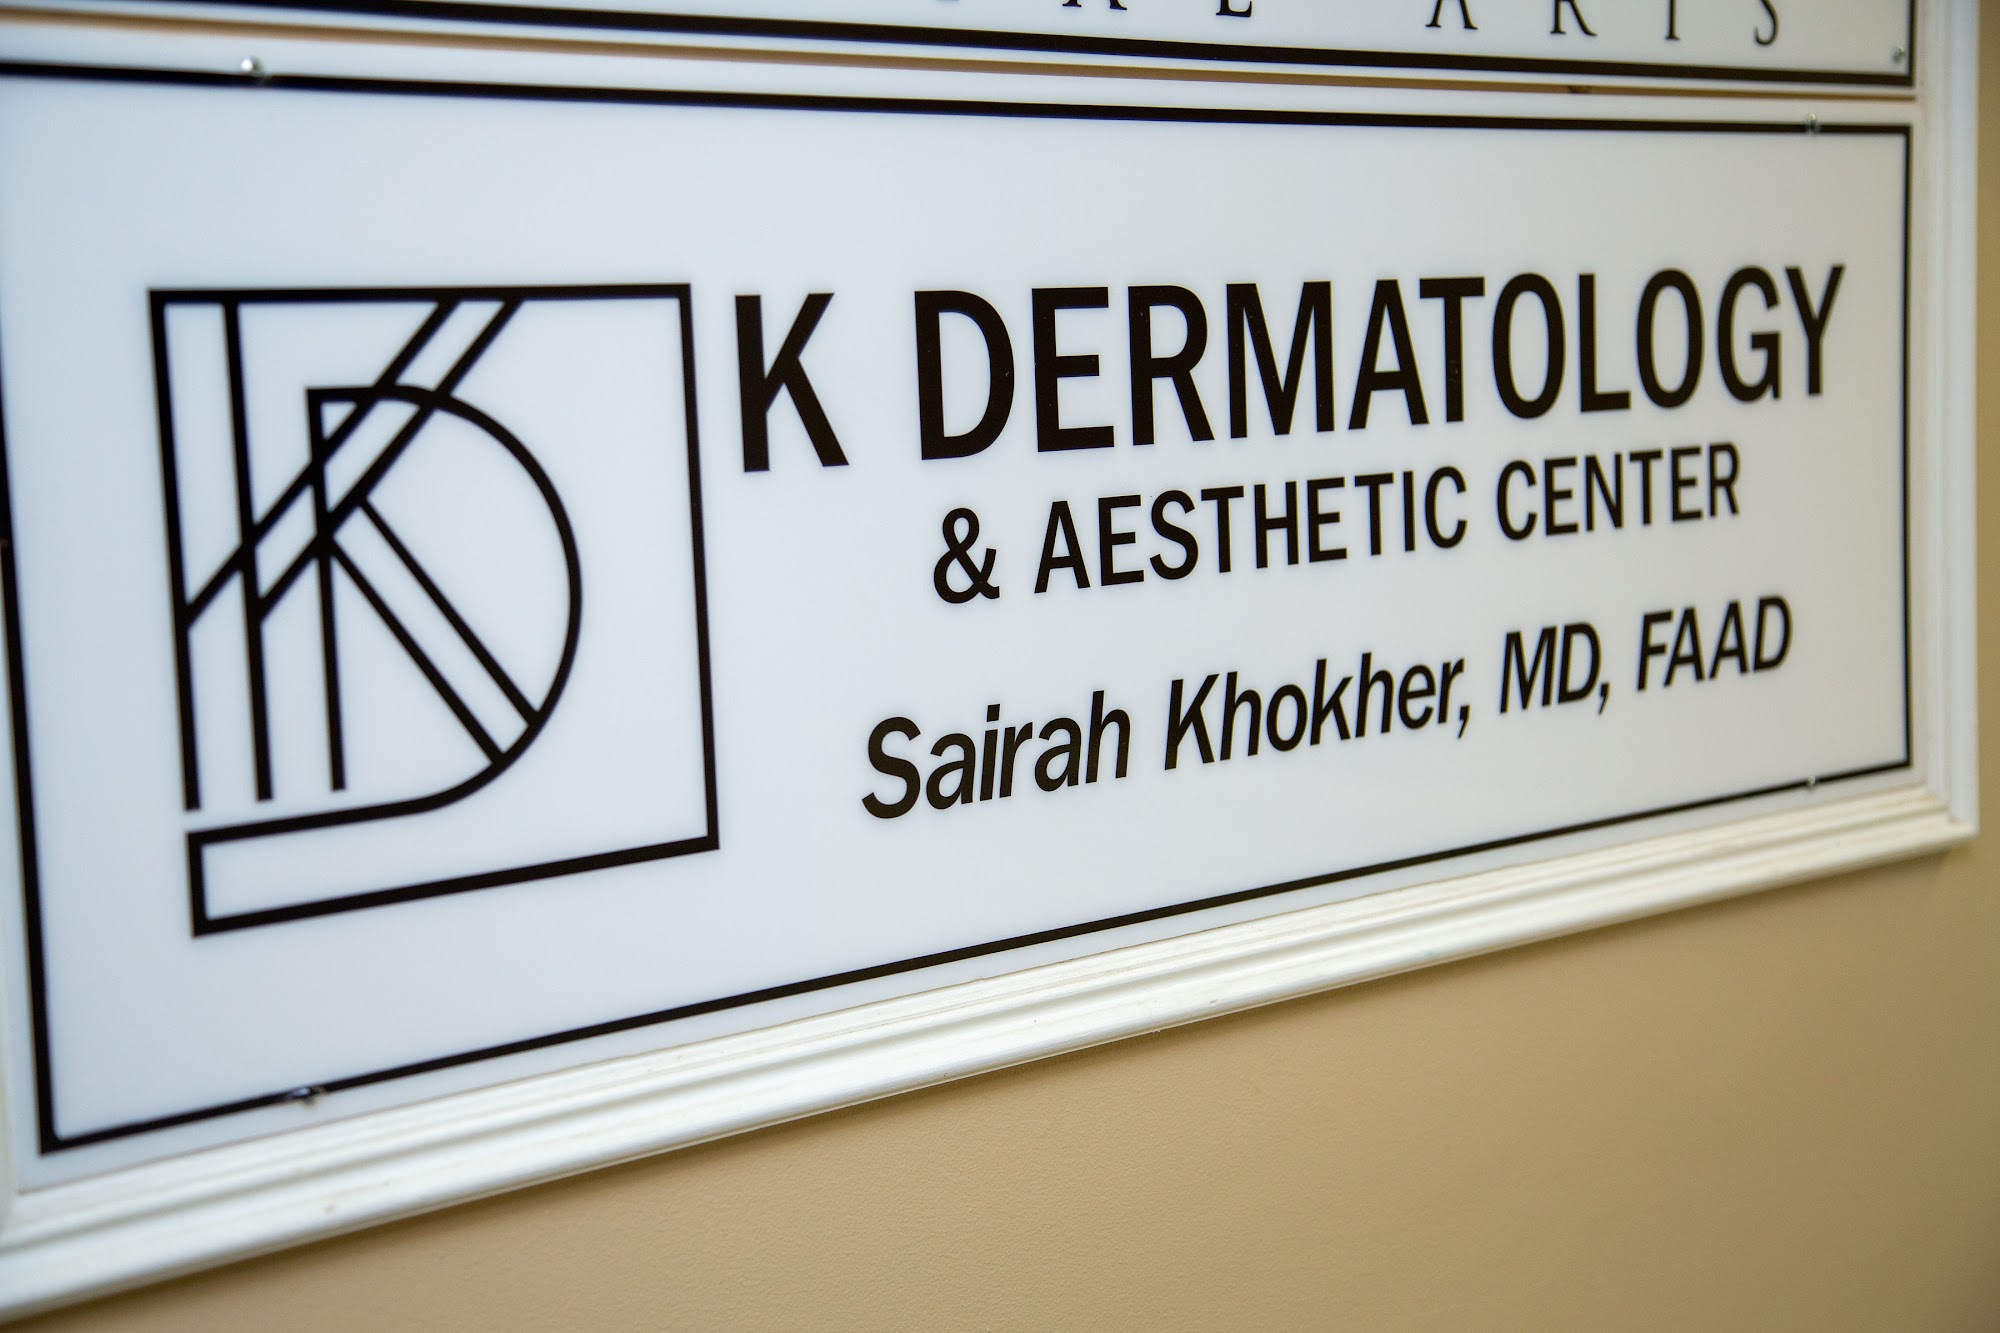 K Dermatology & Aesthetic Center 340 NJ-34, Colts Neck New Jersey 07722